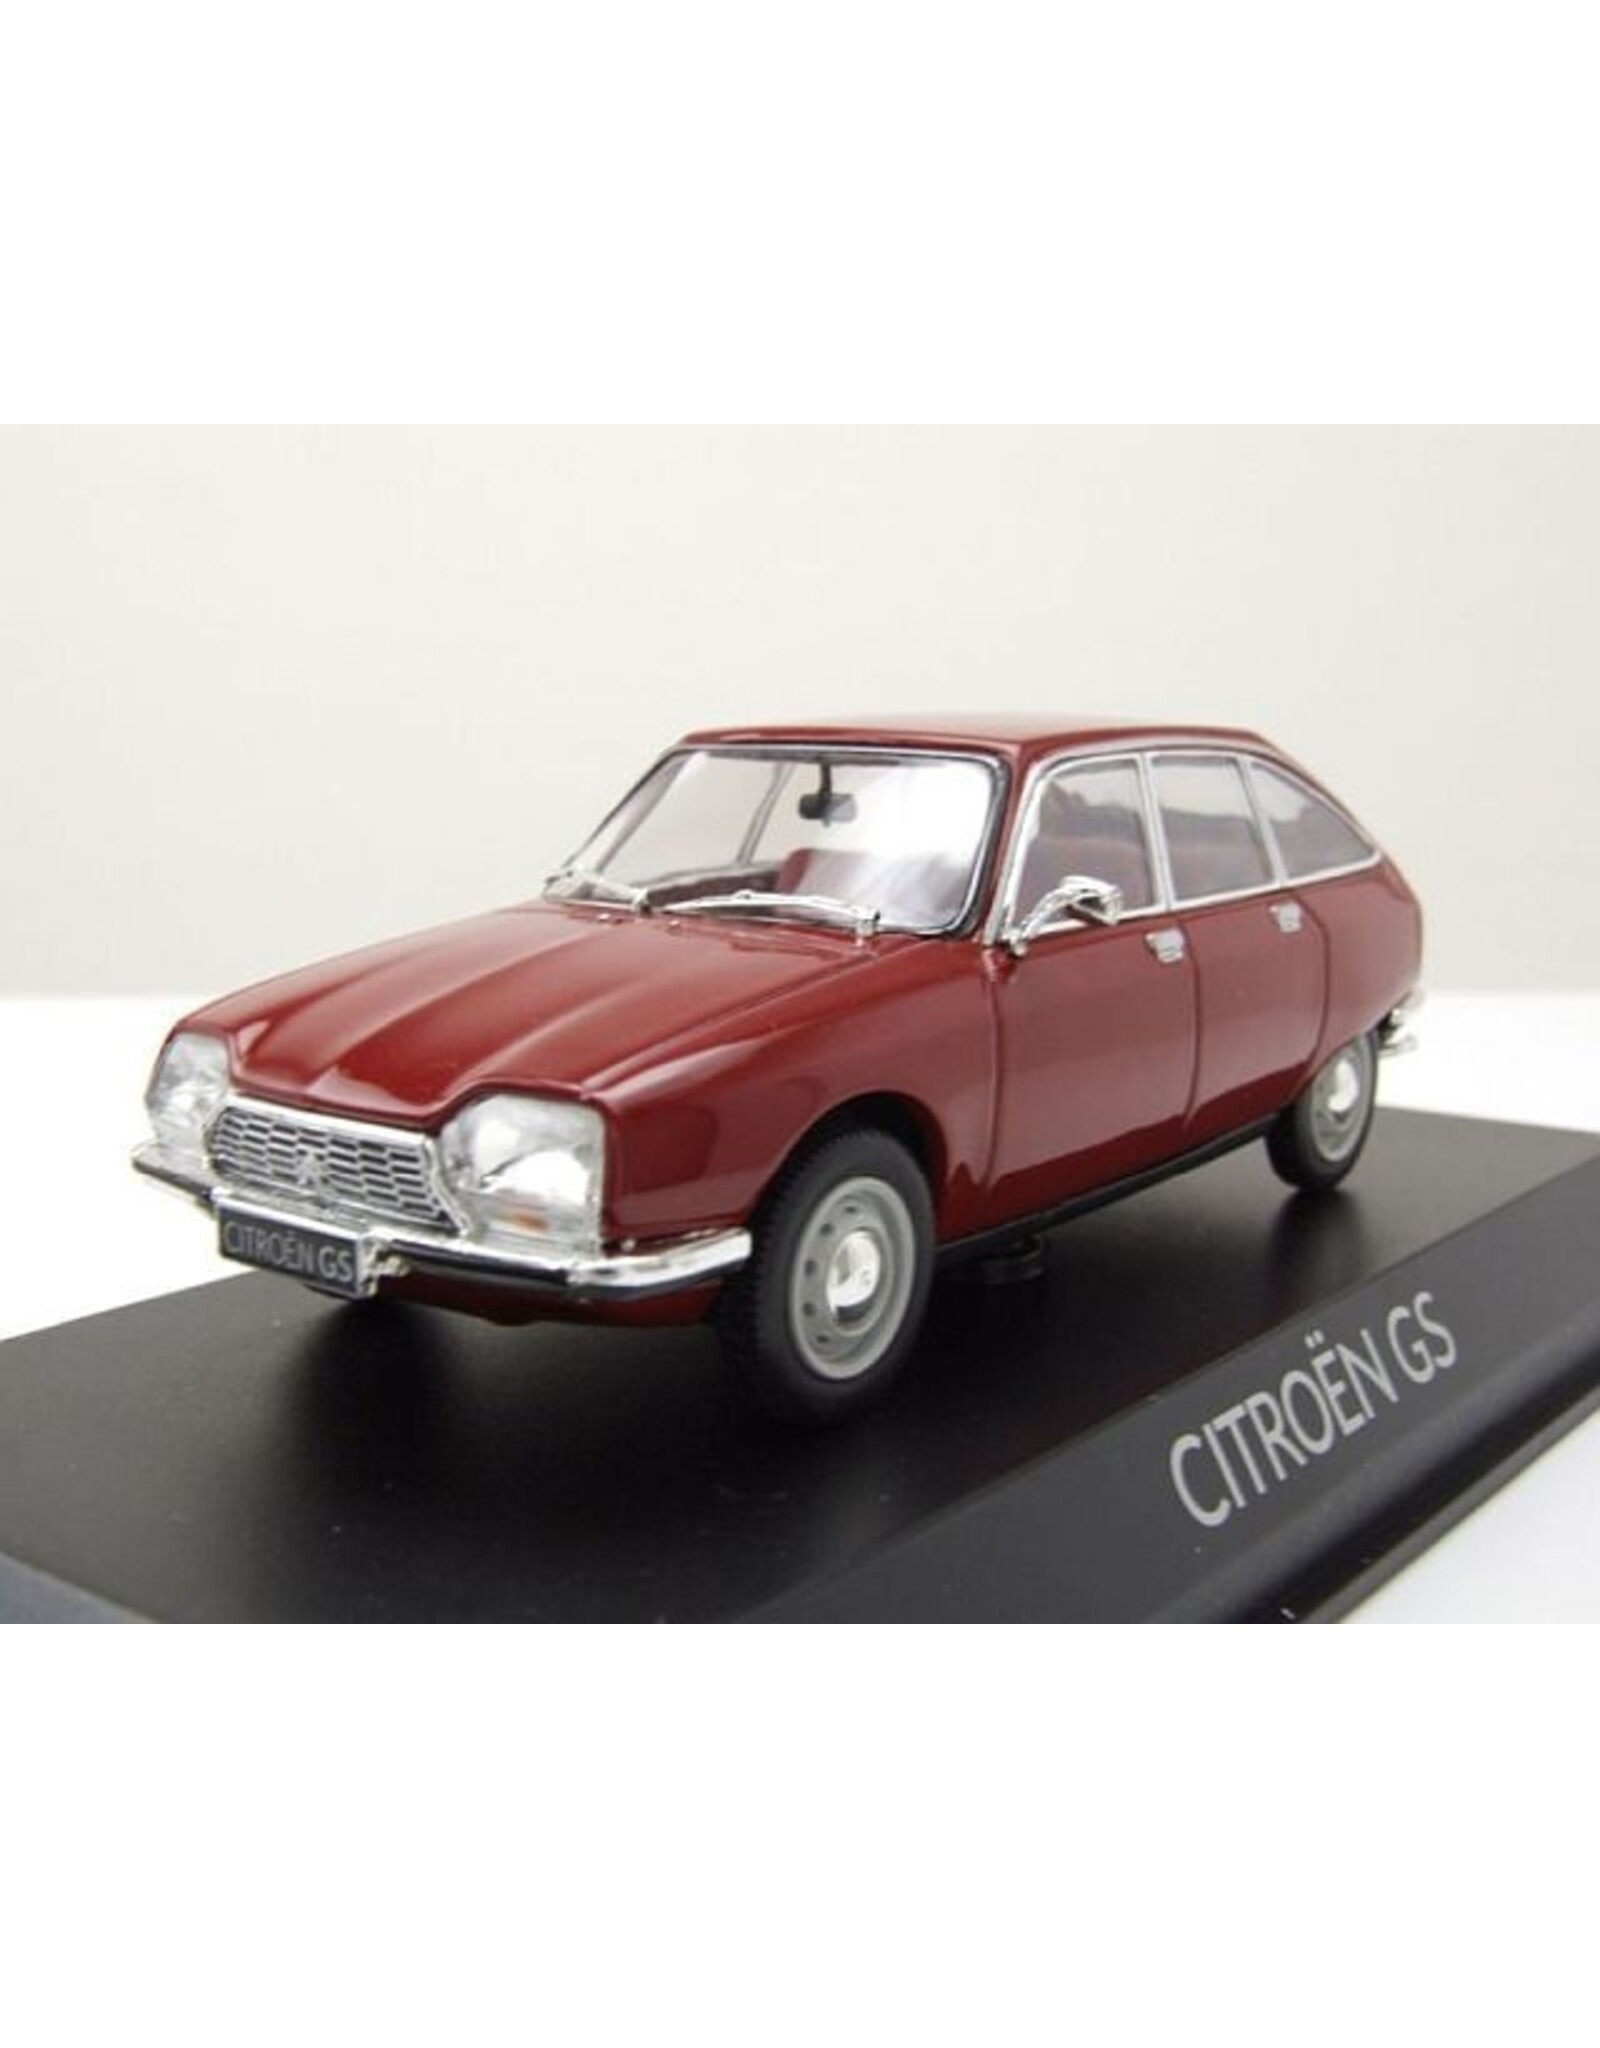 Citroën Citroën GS(1970)